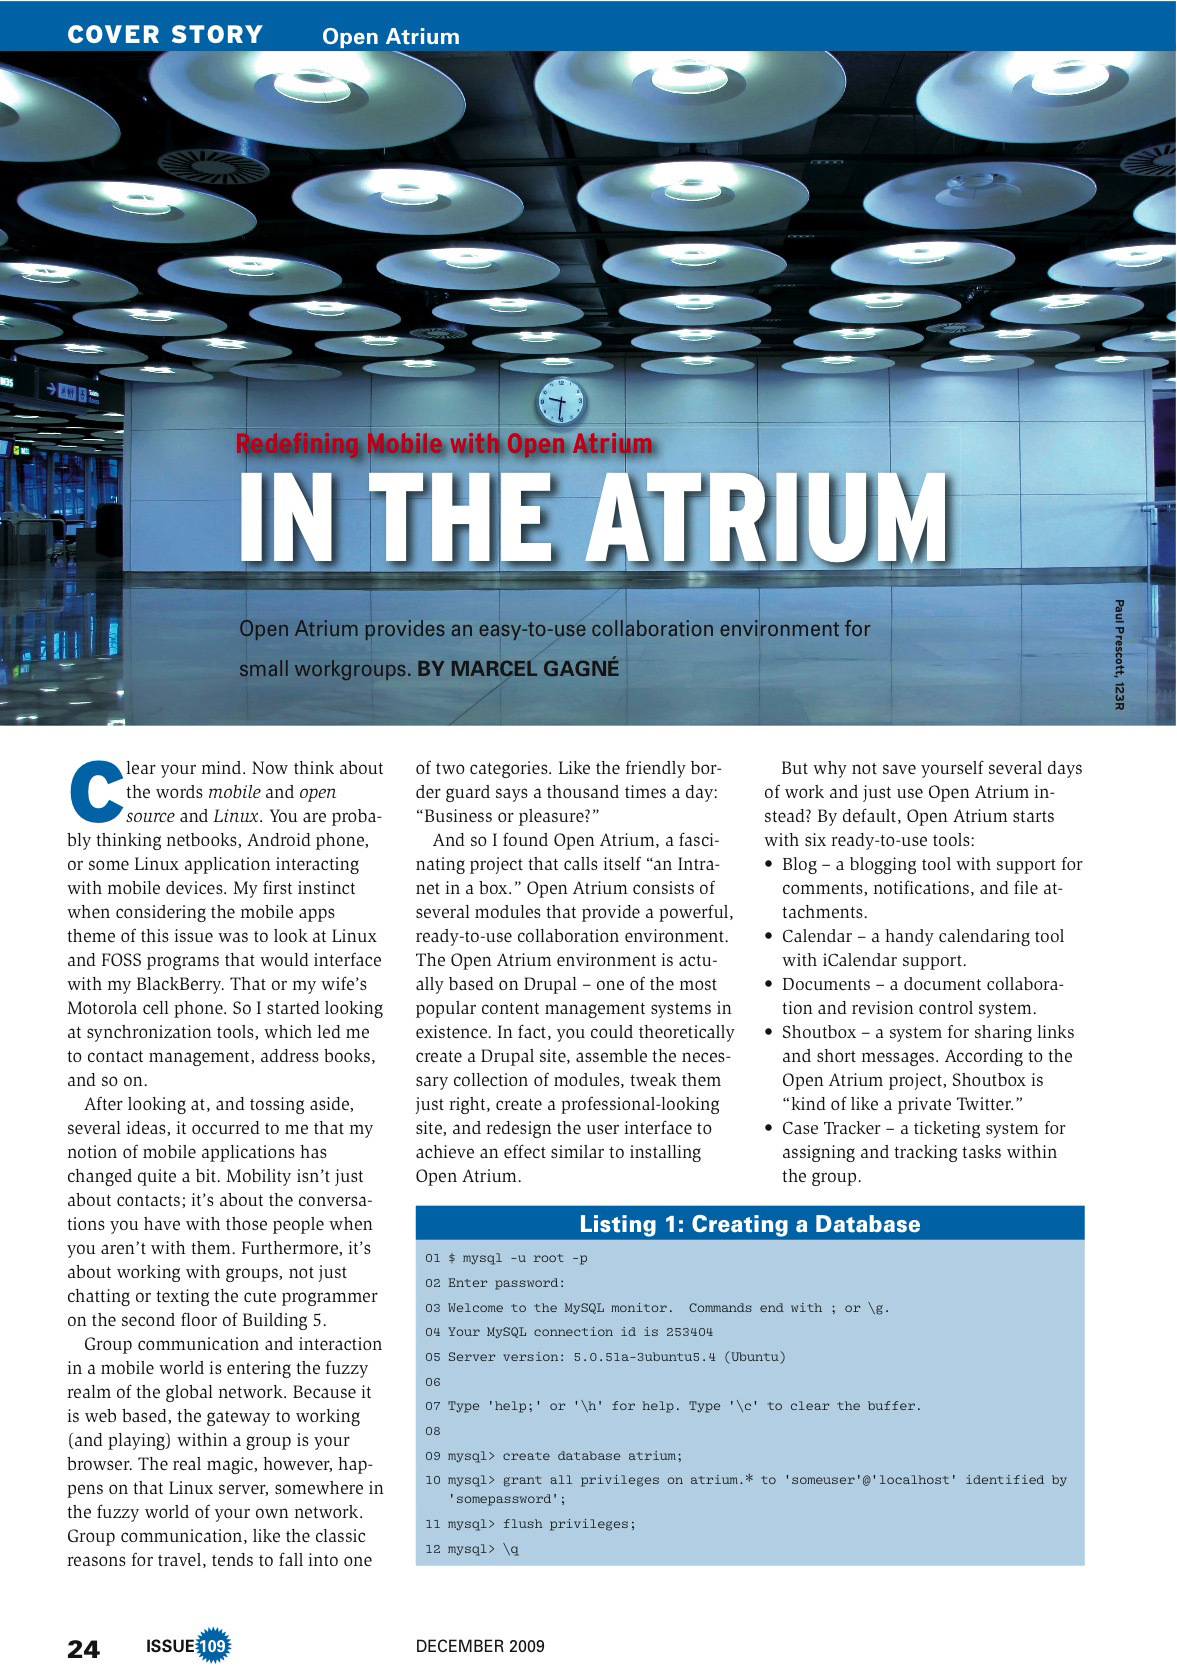 Статья об Open Atrium в Linux Magazine